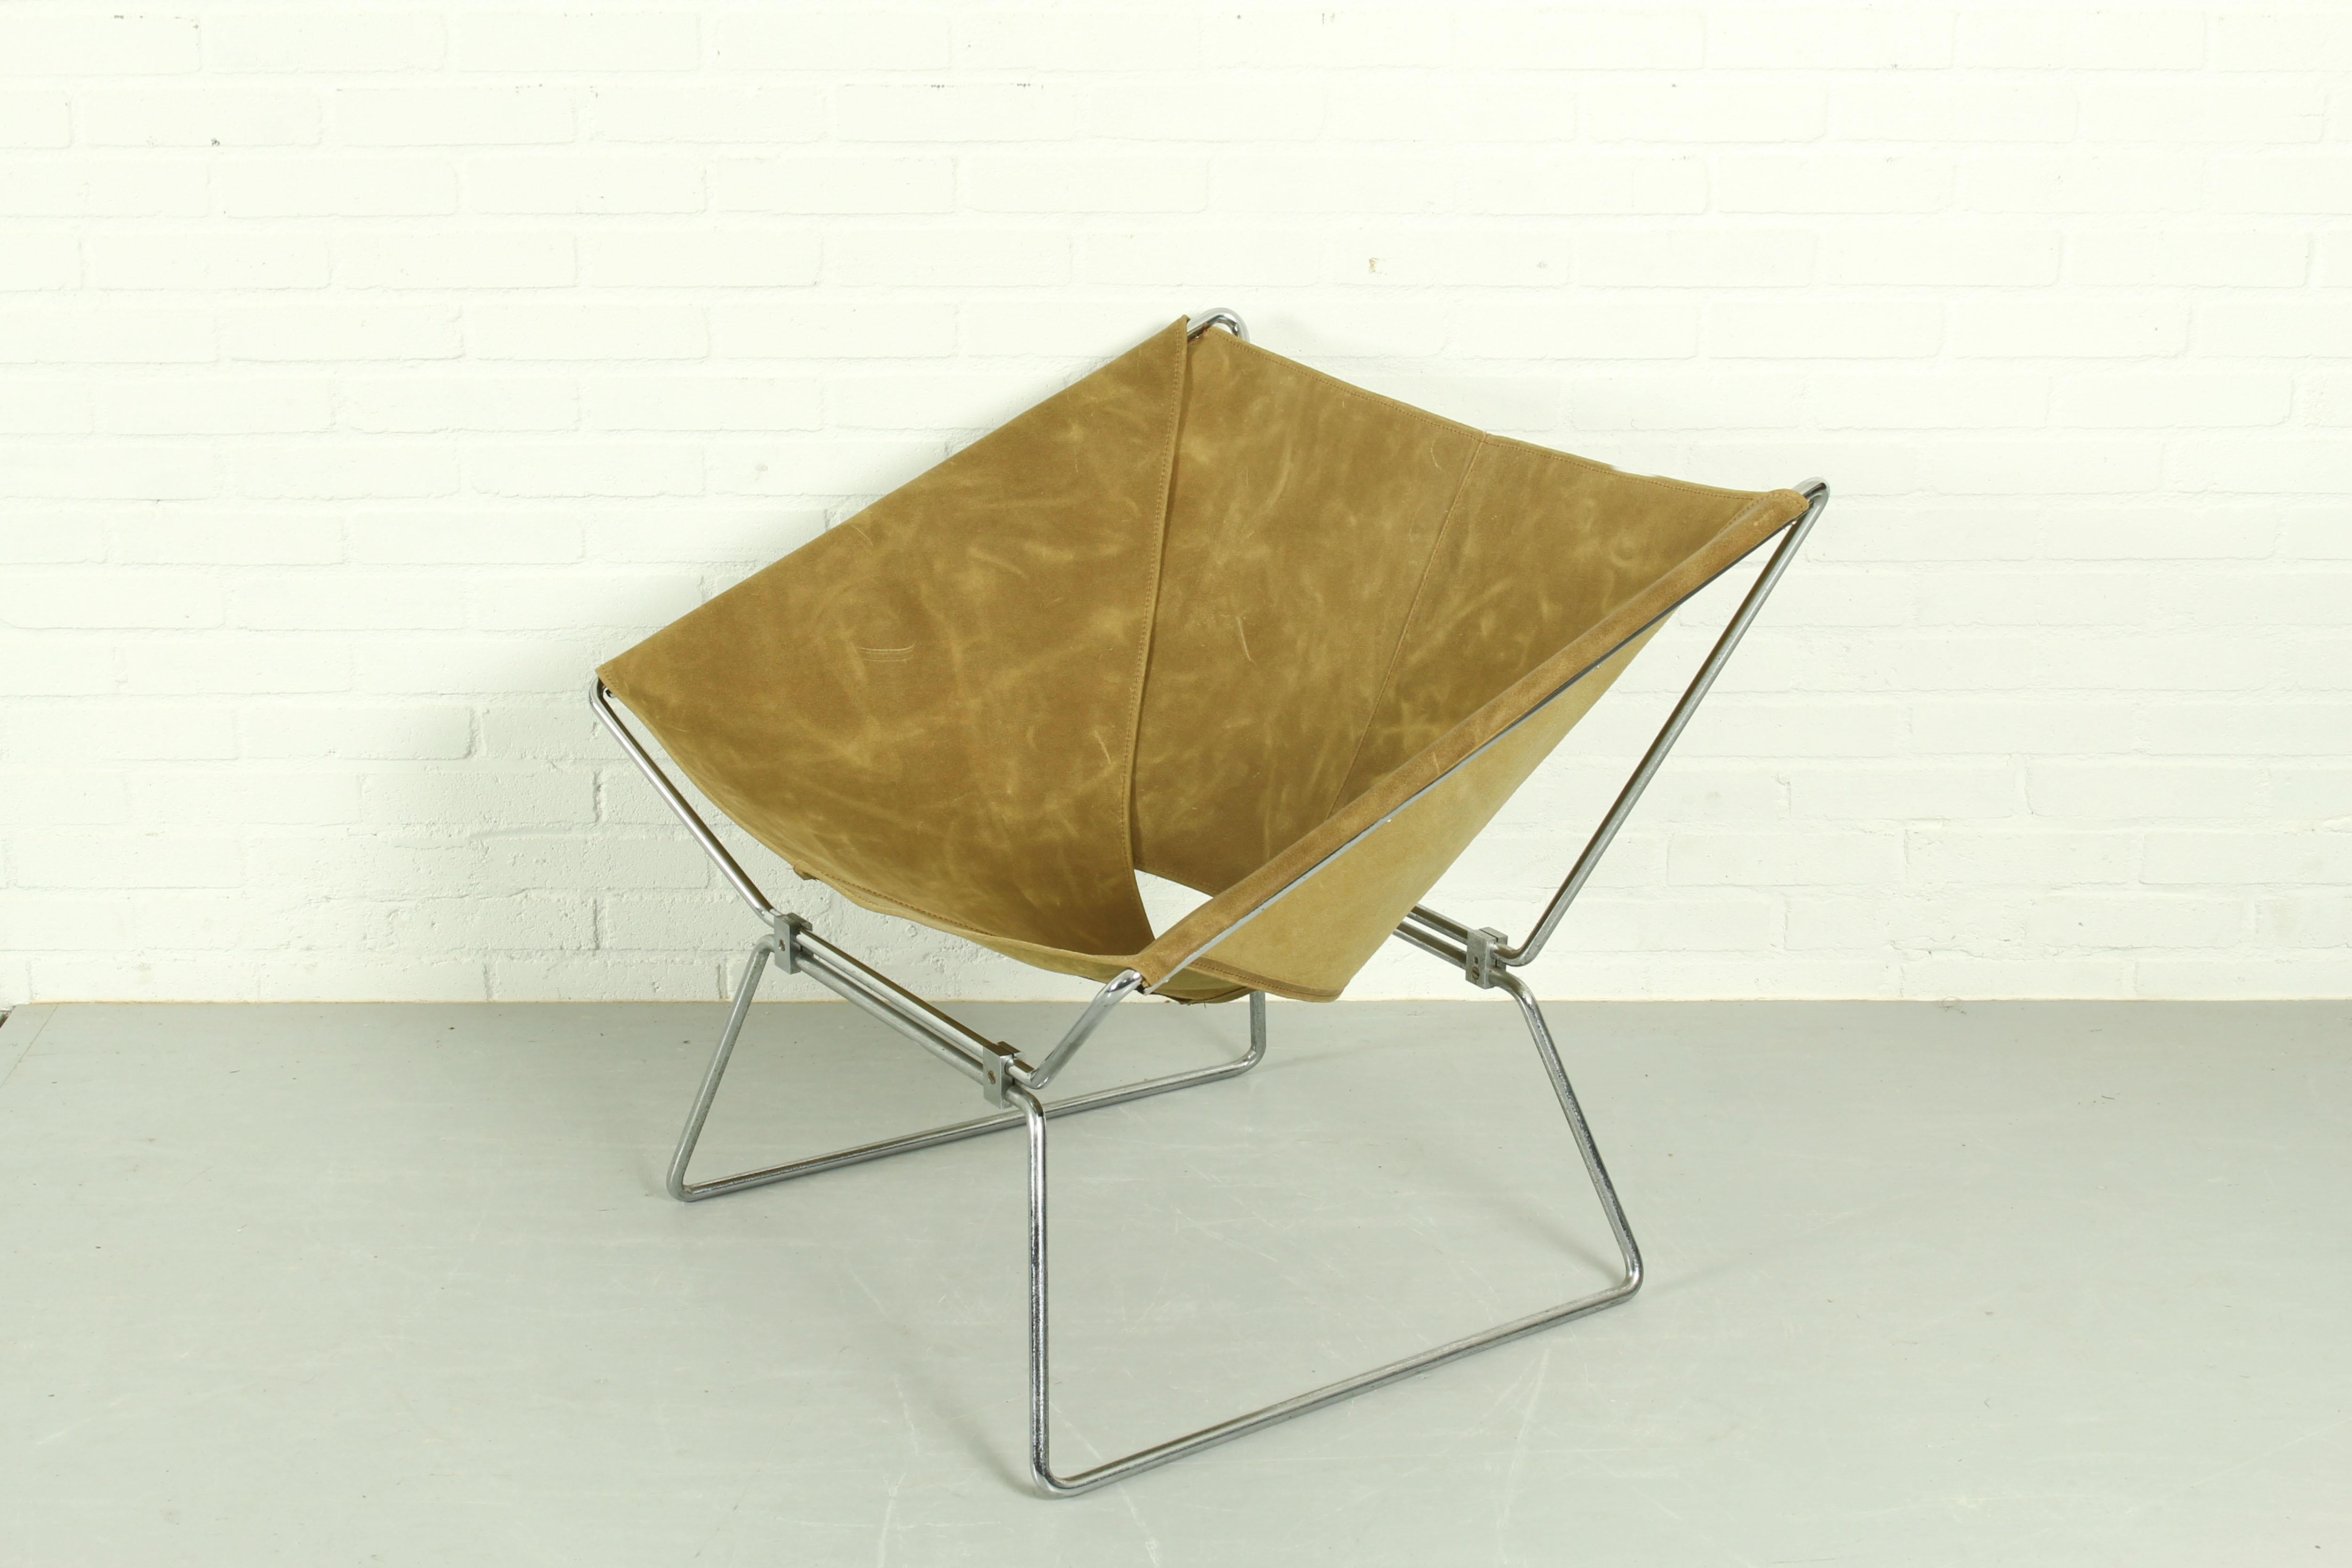 Schöner Stuhl Anneau, entworfen von Pierre Paulin, hergestellt vom niederländischen Hersteller AP Polak. Dieses Modell ist auch als AP 14 bekannt. Der schöne, fast architektonische Metallrahmen hält den Lederriemen. Neue Lederpolsterung.